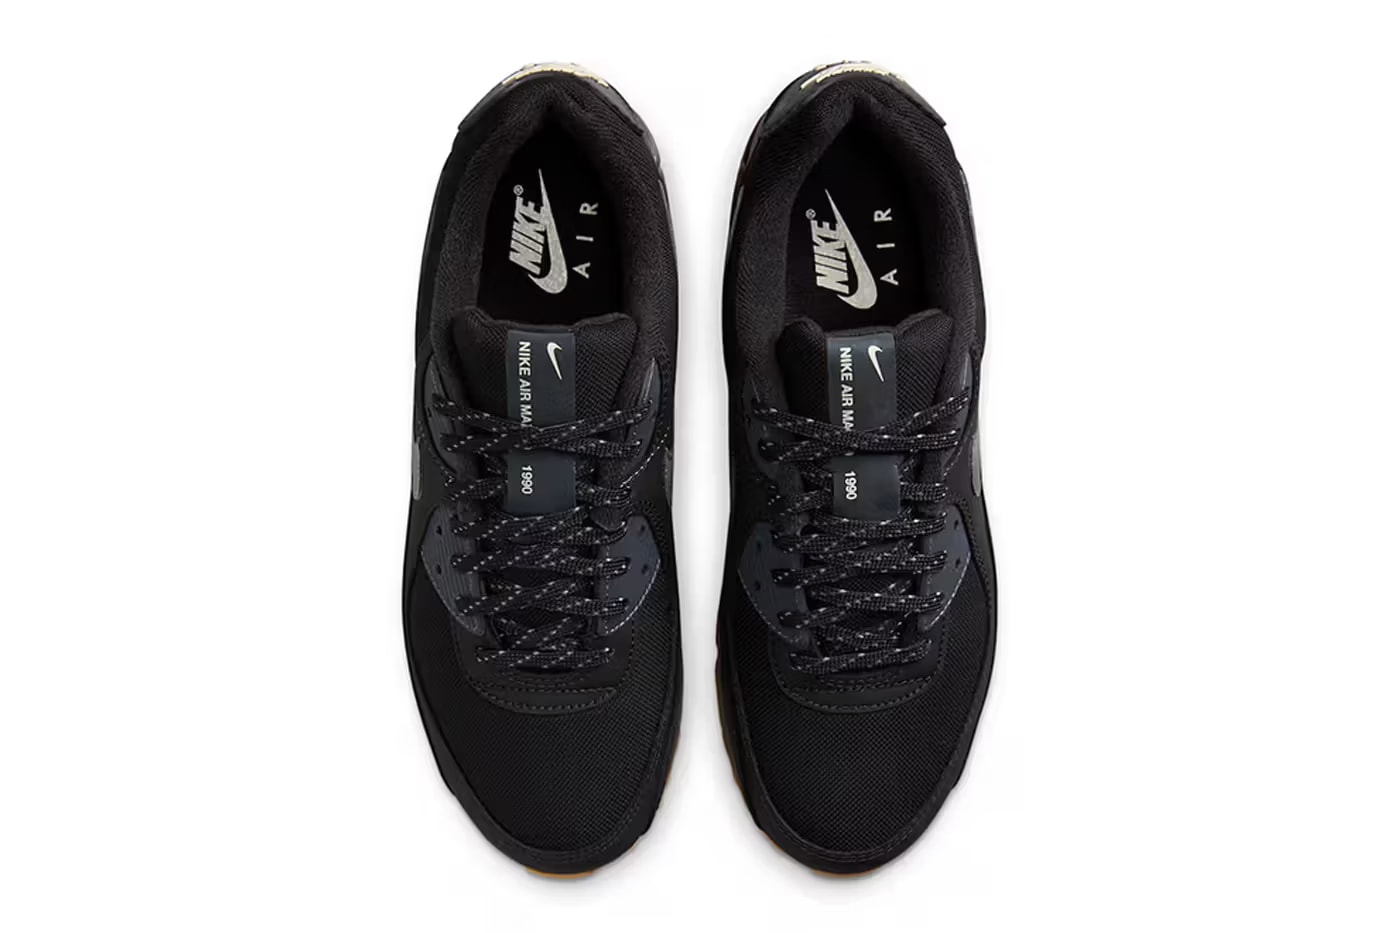 nike air max 90 black gum colorway release info where to buy sneakers footwear